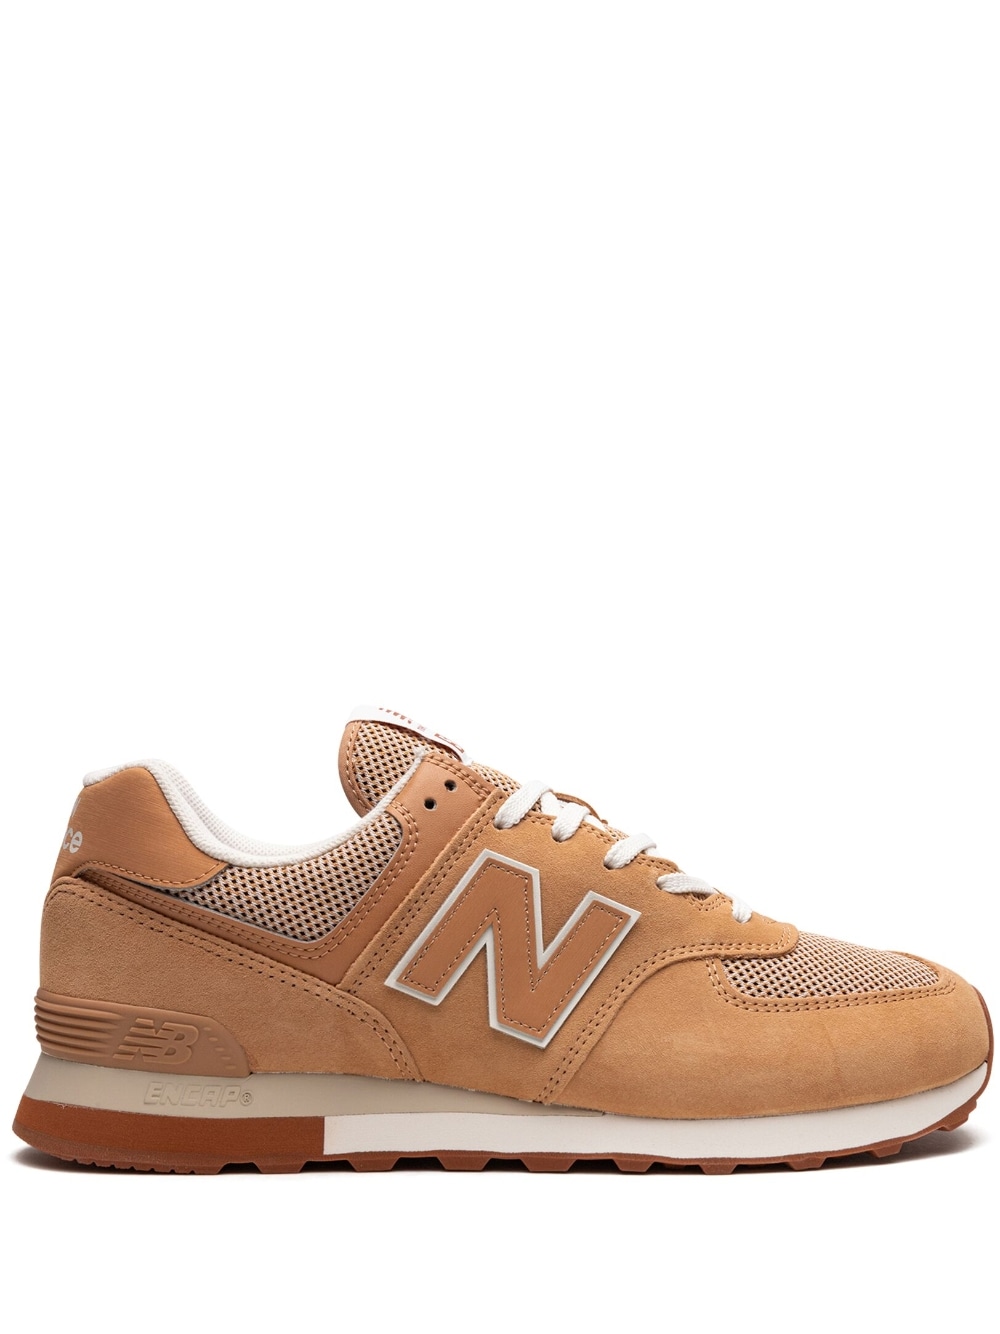 New Balance 574 "Caramel/Rust" sneakers - Neutrals